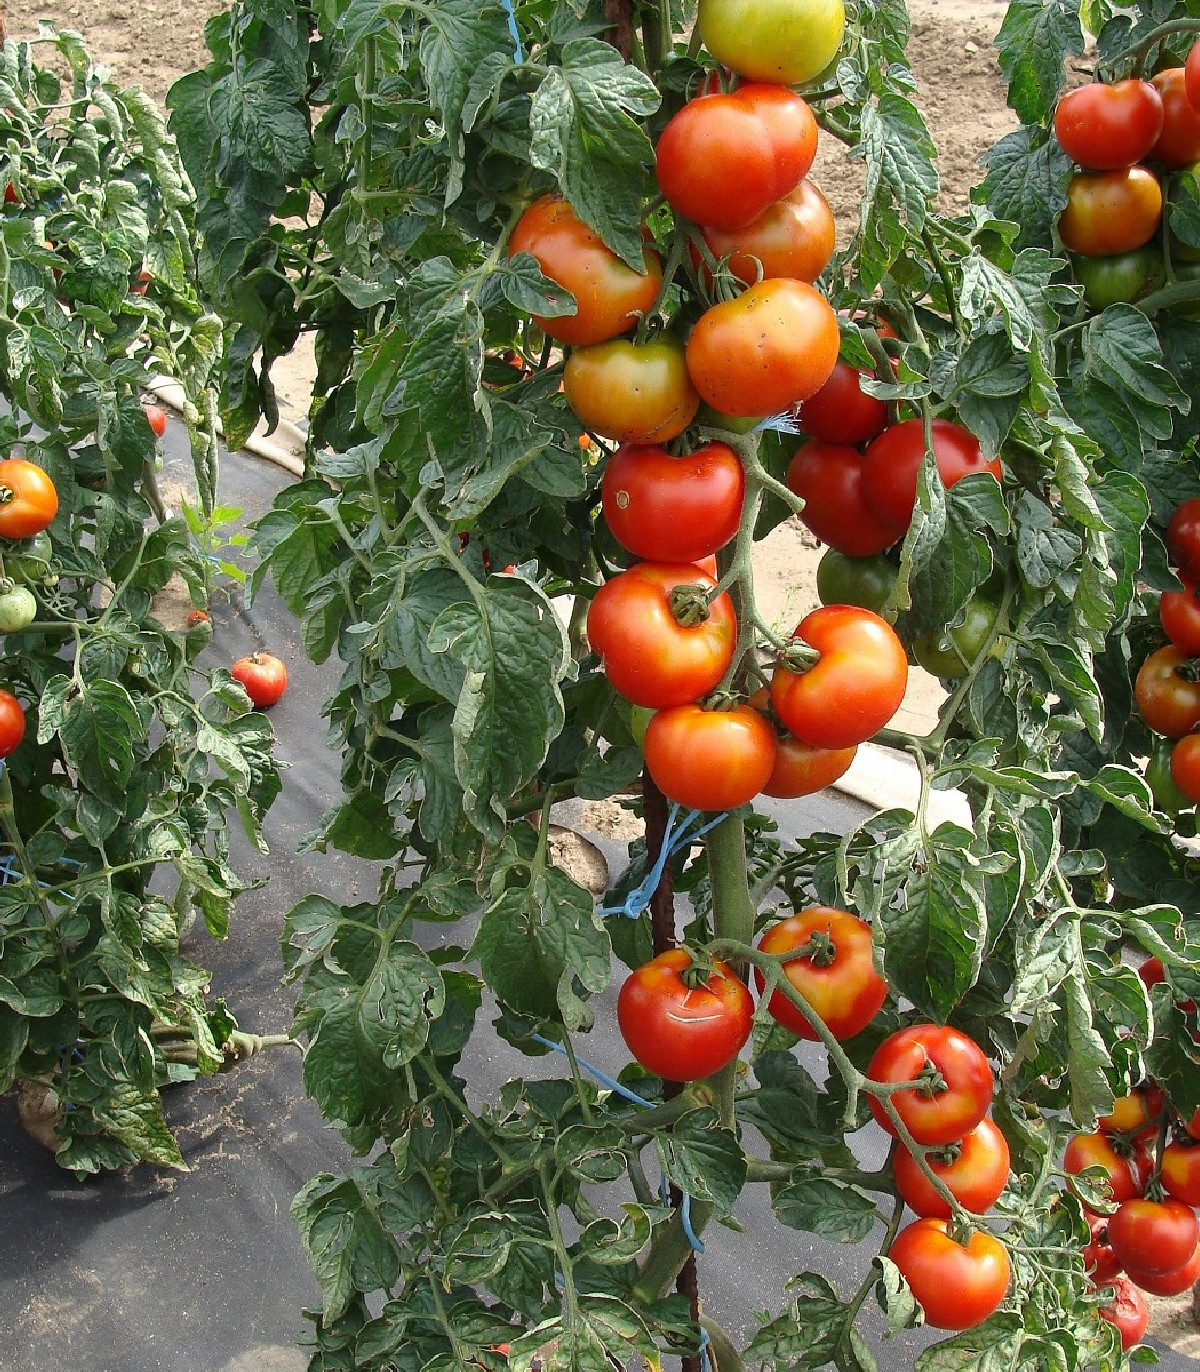 Rajče Start S F1 - Solanum lycopersicum - osivo rajčat - 10 ks